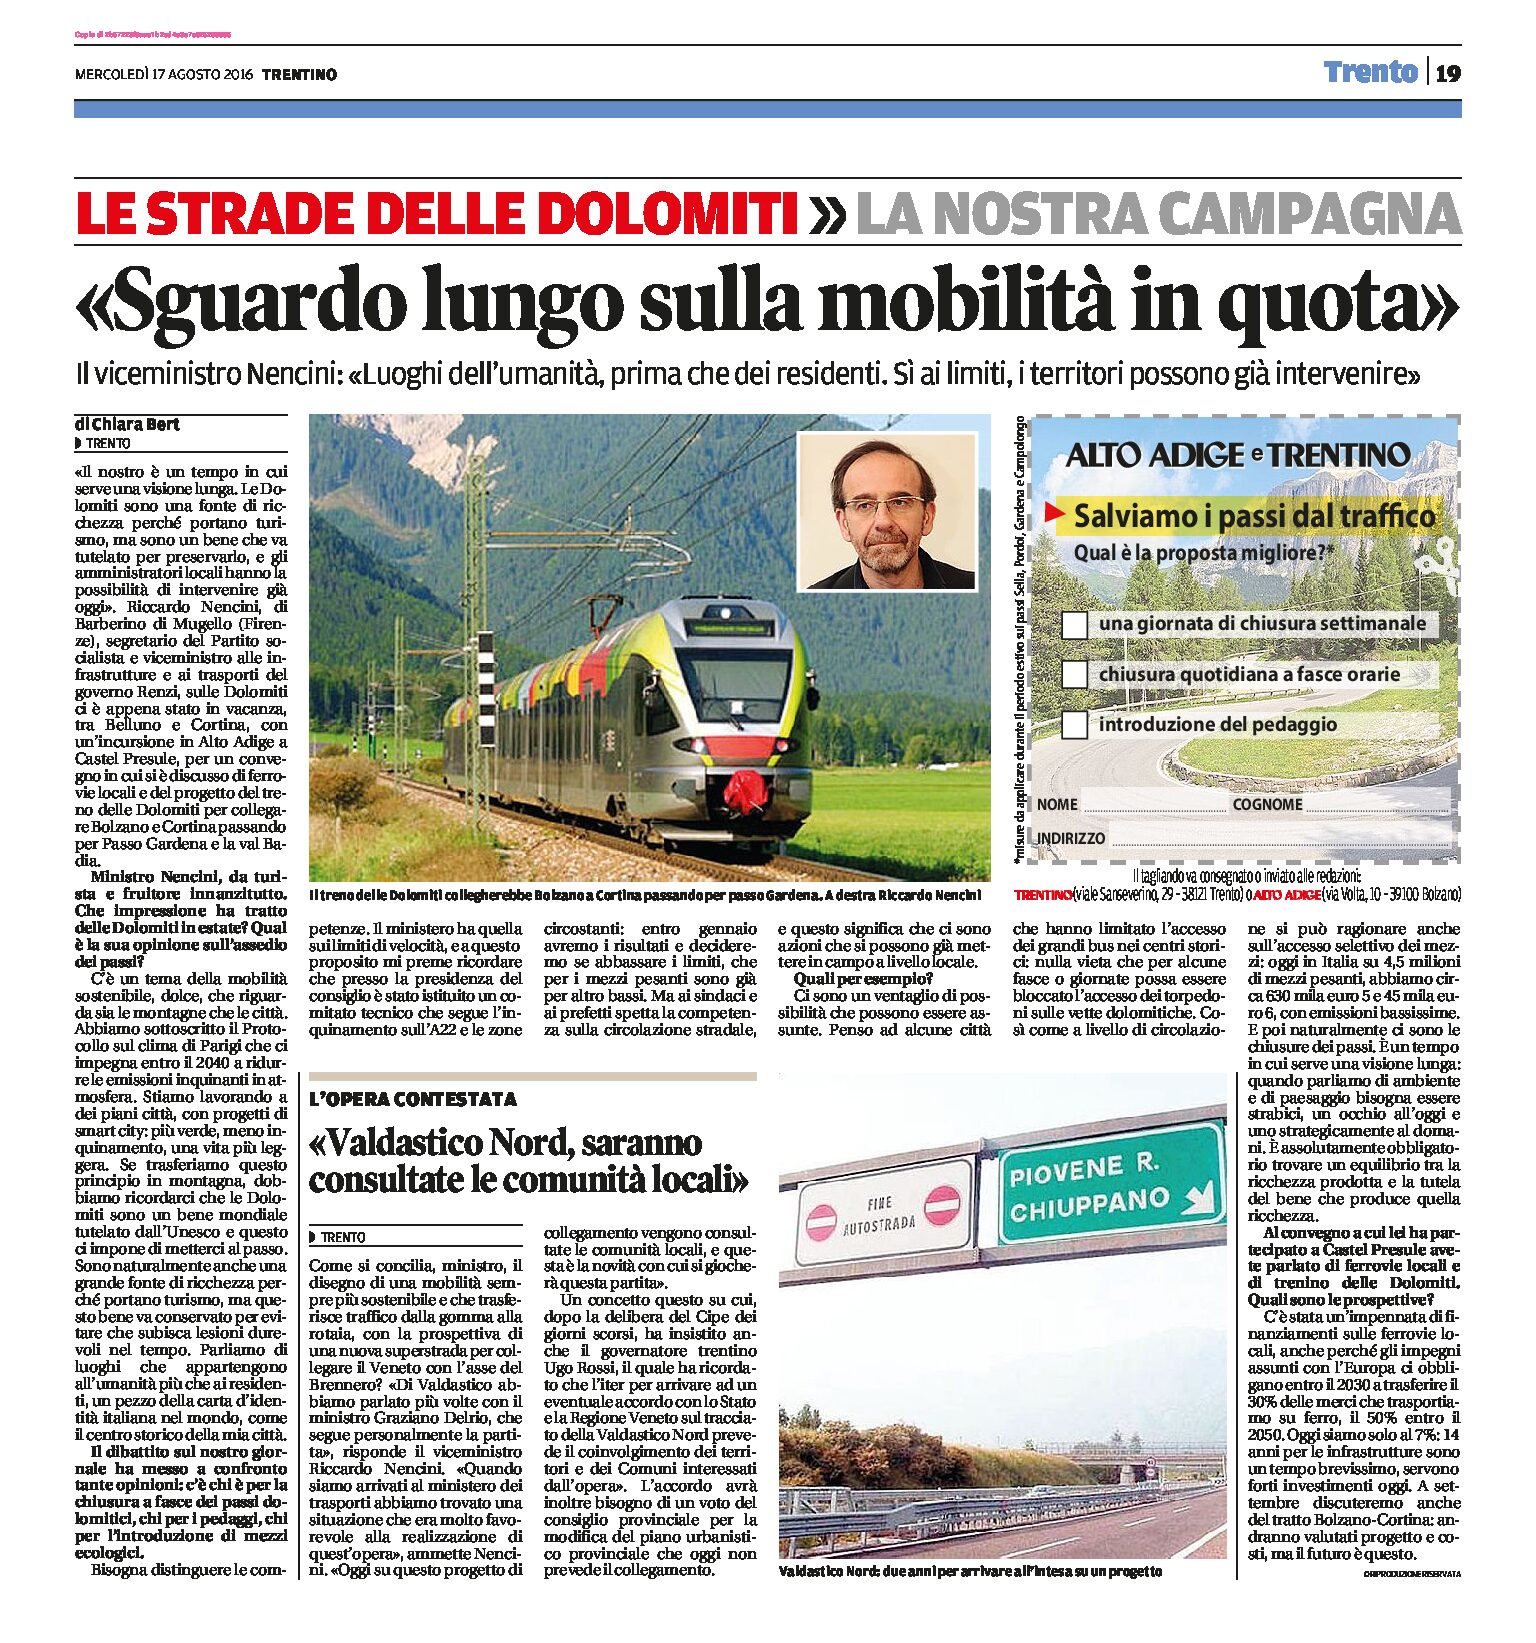 Valdastico Nord: saranno consultate le comunità locali. In Alto Adige mobilità in quota, treno delle Dolomiti